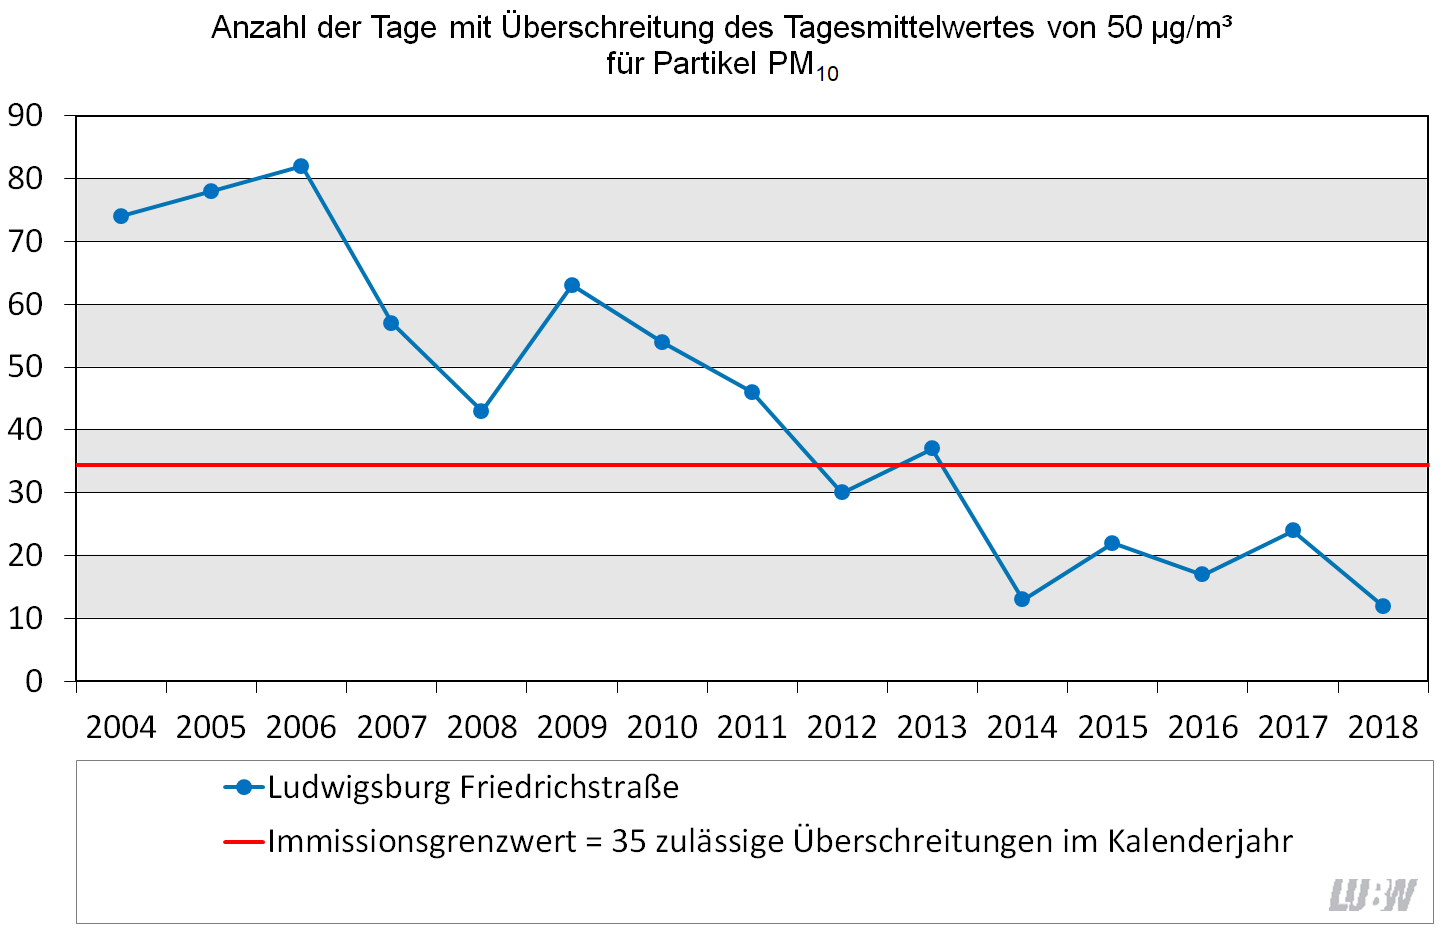 Entwicklung der Anzahl der Tage mit Überschreitung des Tagesmittelwertes von 50 µg/m³ für Partikel PM10 an der Spotmessstelle Ludwigsburg Friedrichstraße als Liniendiagramm dargestellt